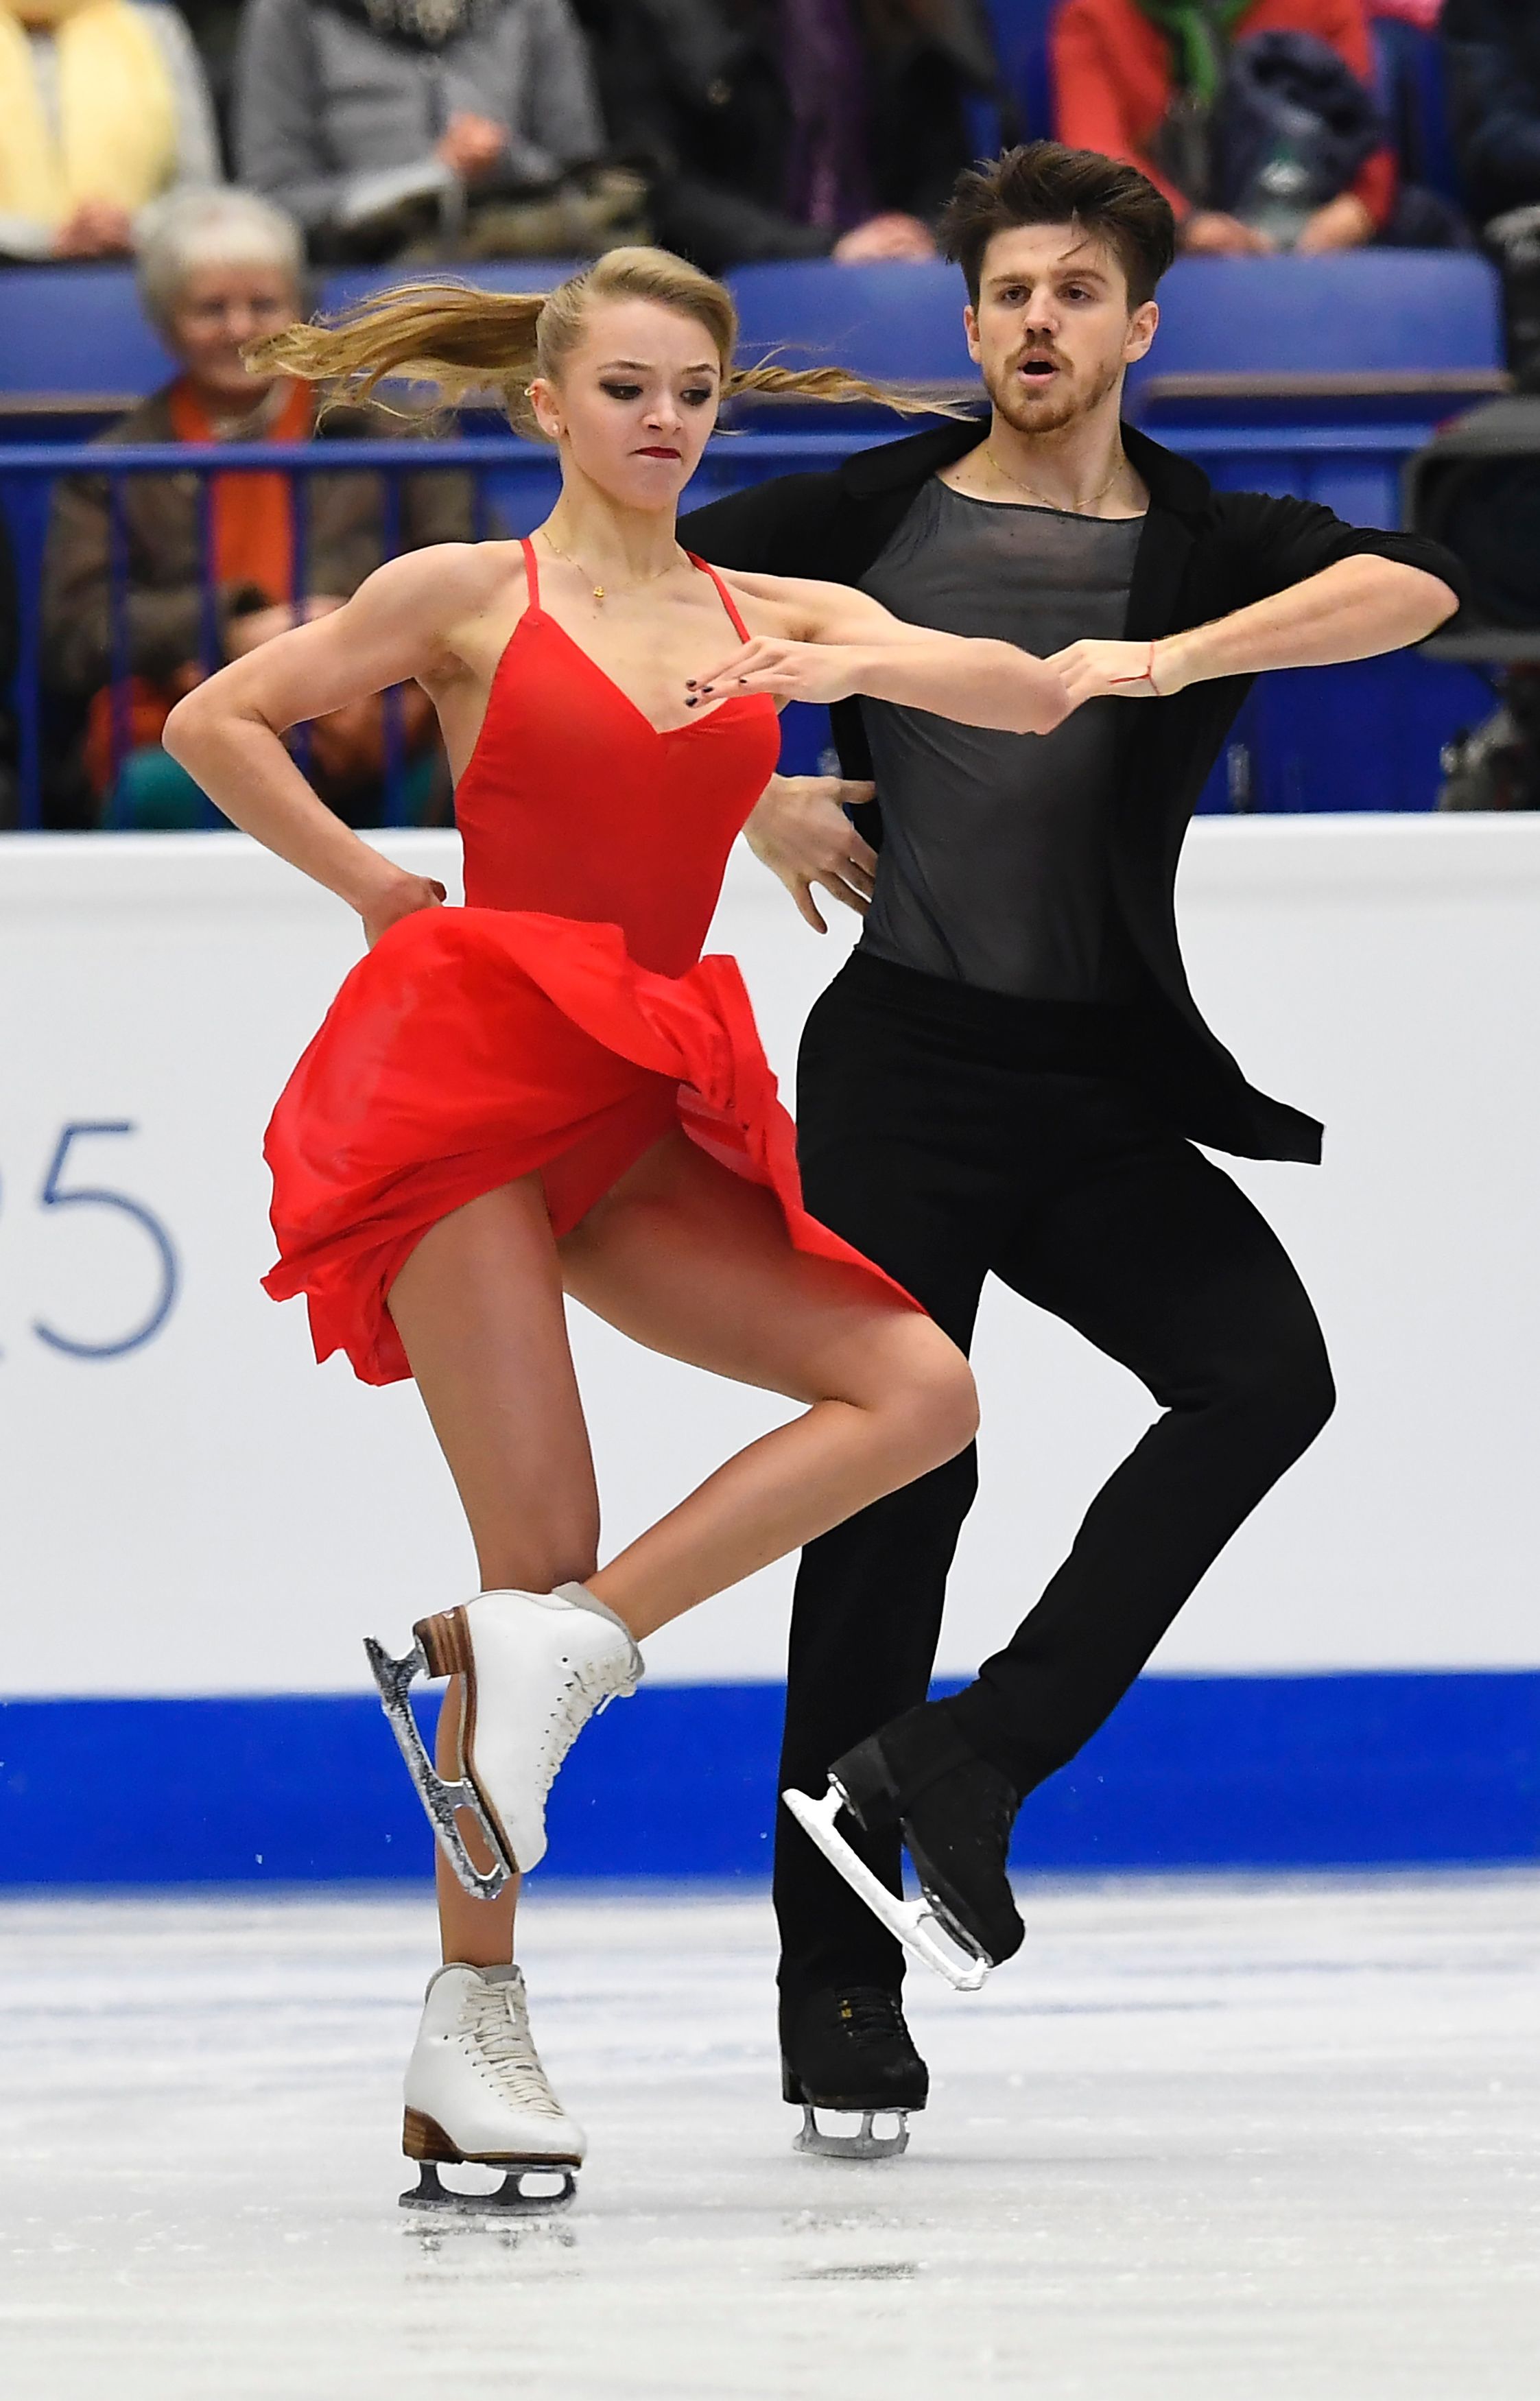 بطولة كأس الأمم الأوروبية 2017 للرقص الحر على الجليد (17)